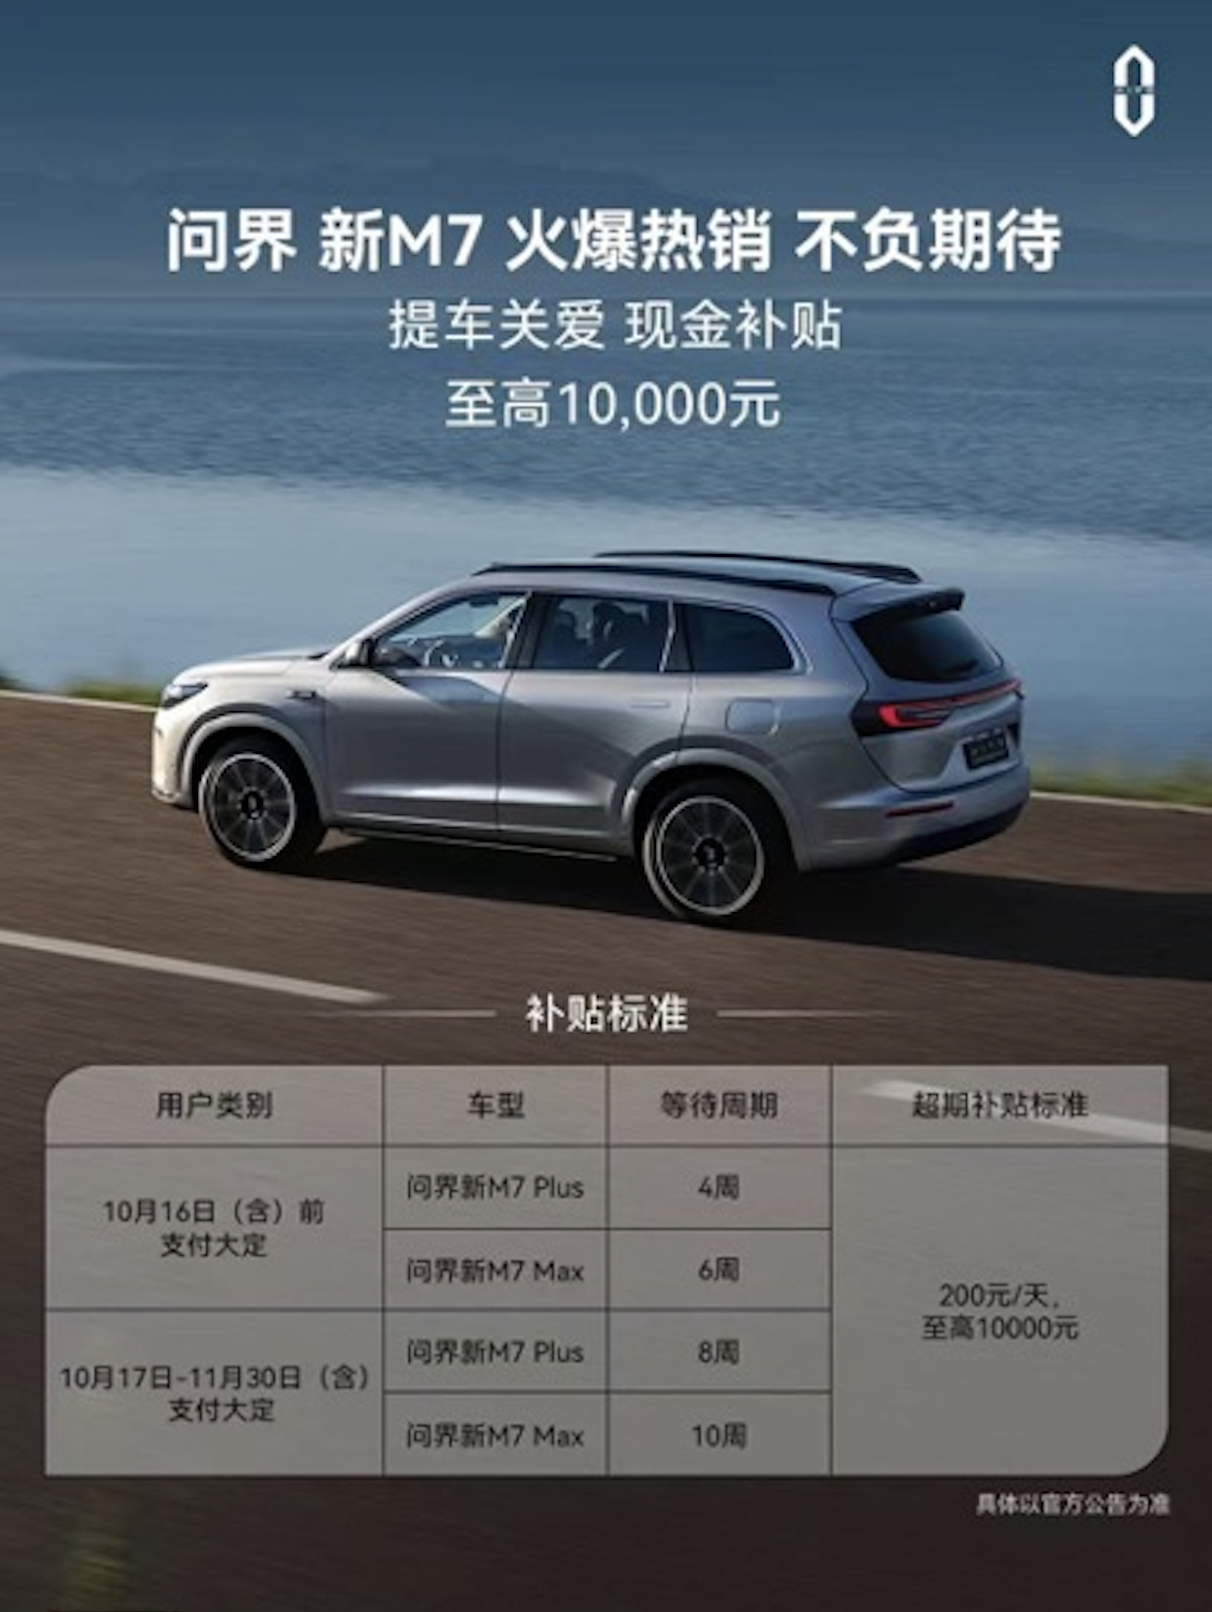 鸿蒙智行最畅销车型 问界新M7大定两个半月破10万